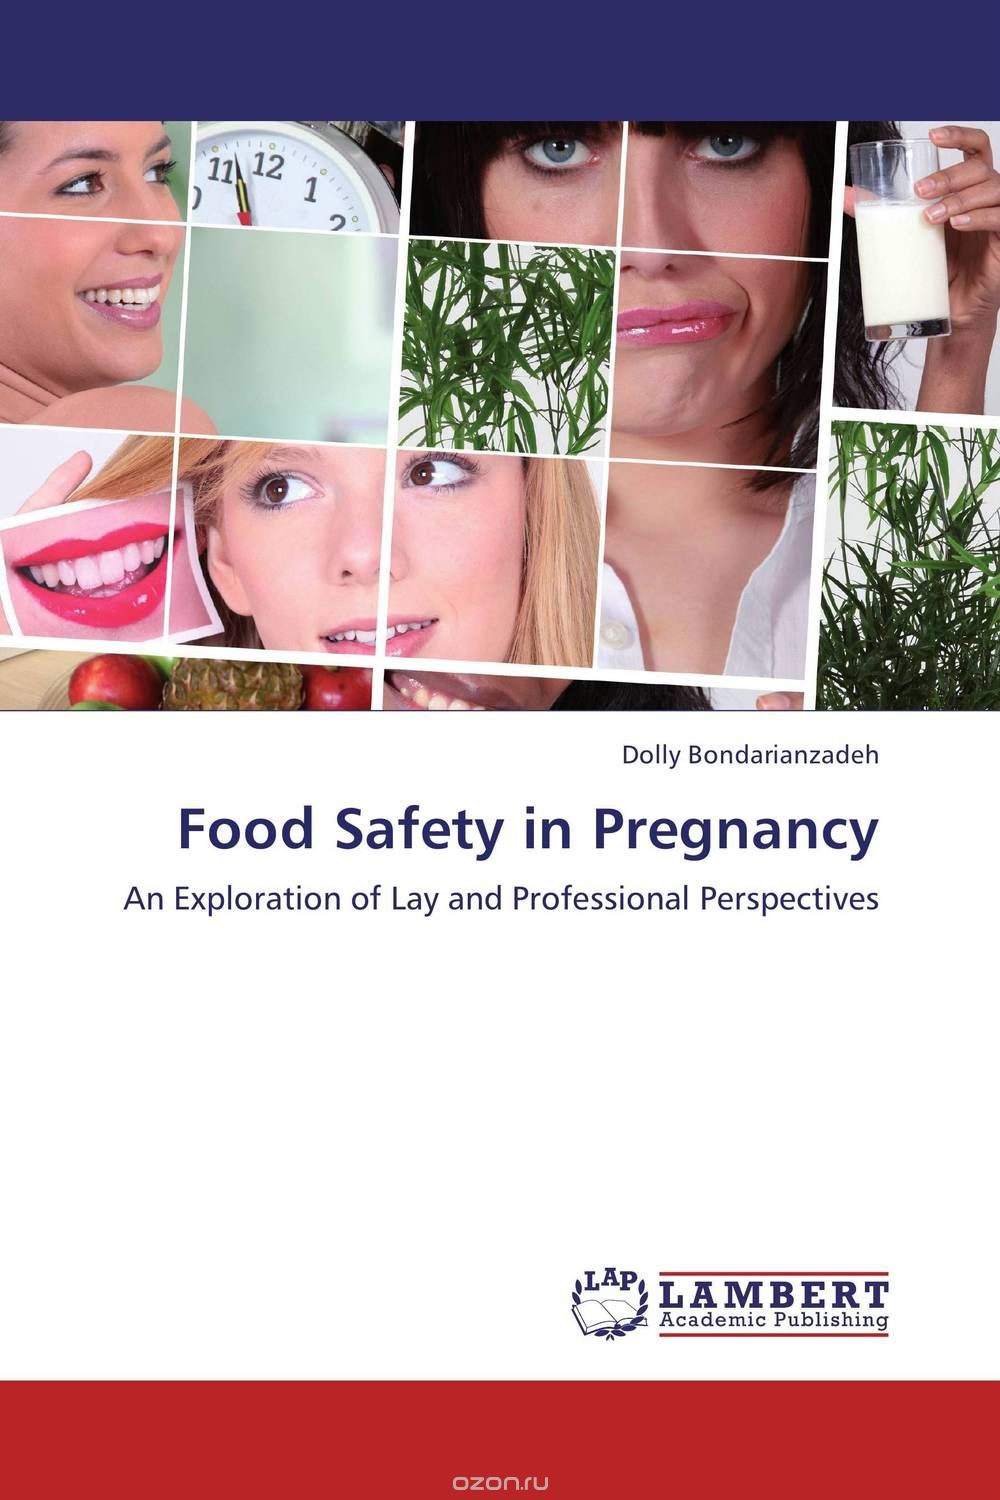 Скачать книгу "Food Safety in Pregnancy"